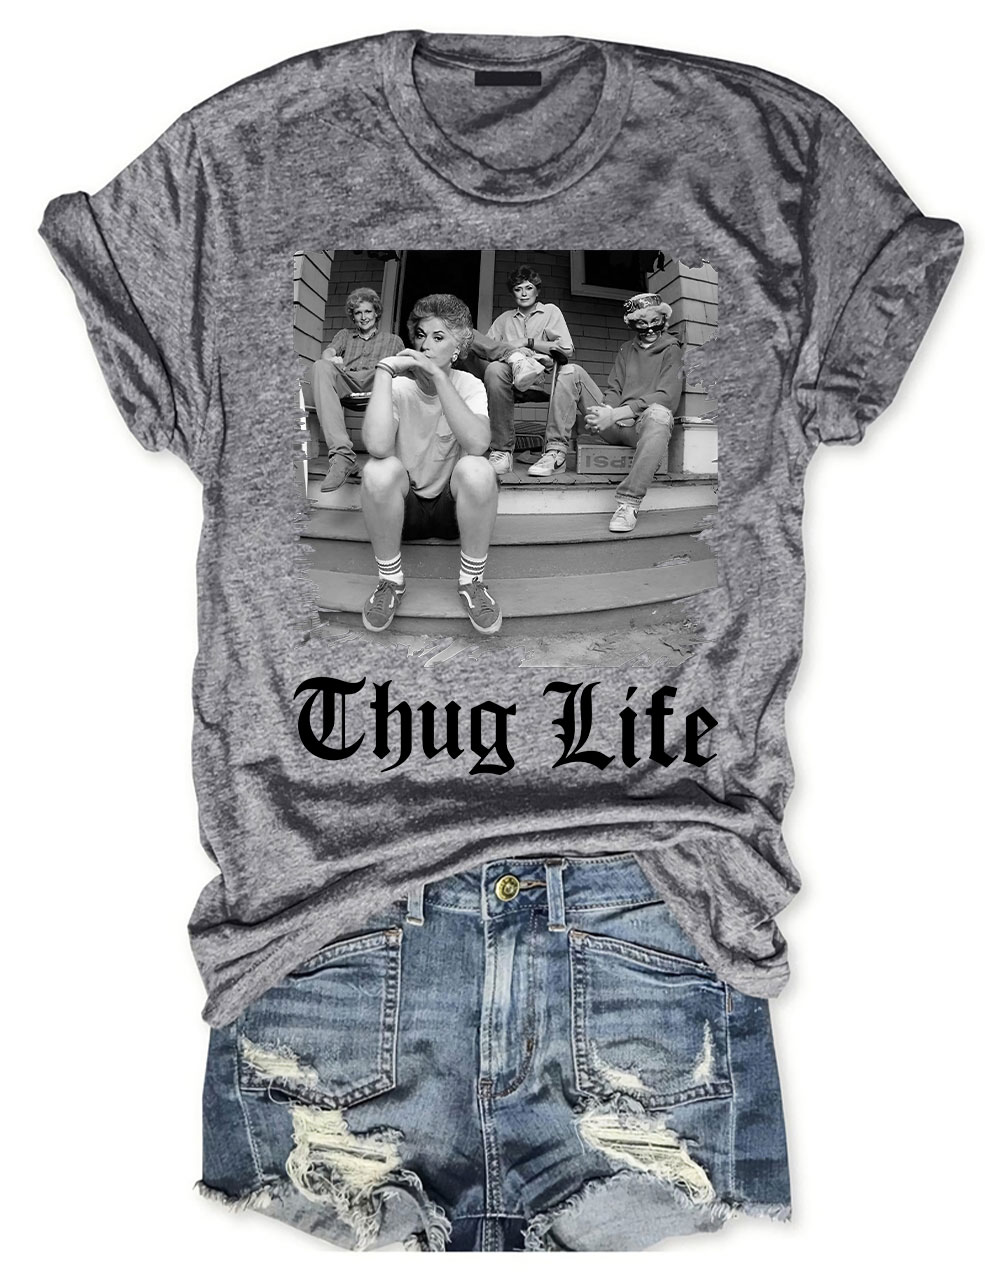 The Golden Girls Thug Life T-shirt